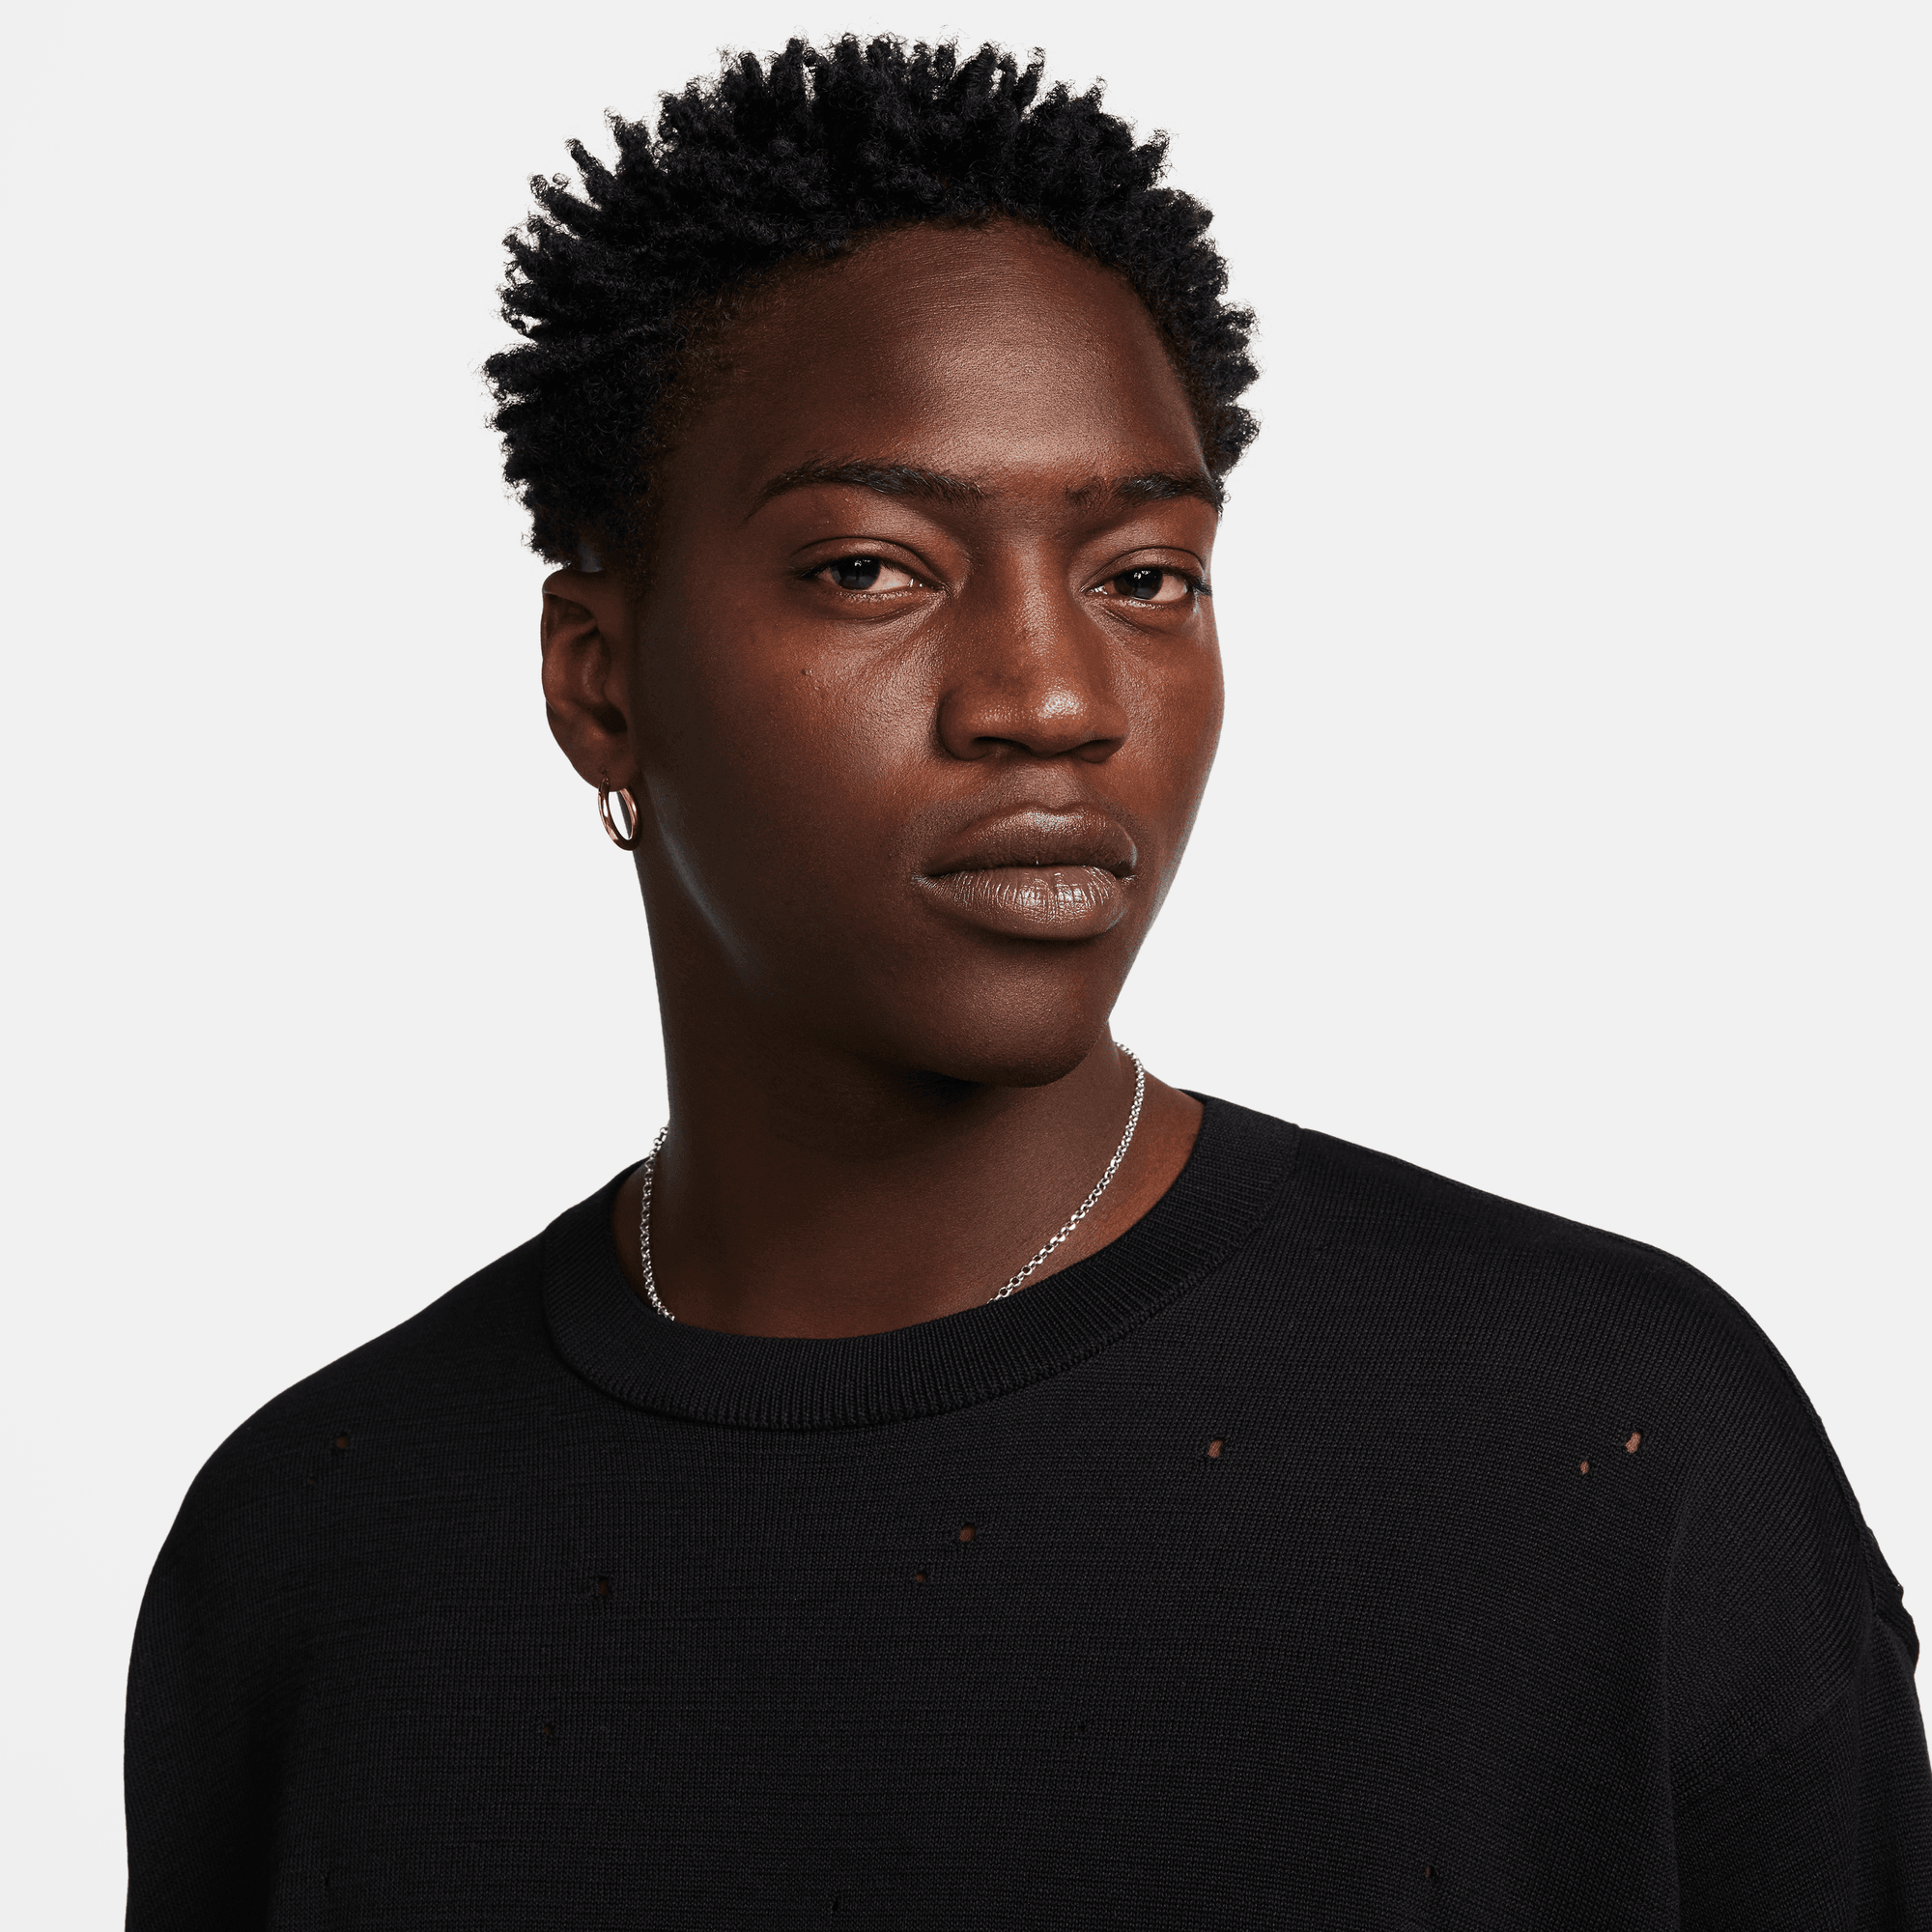 Nike Sportswear Tech Pack Black Long-Sleeve Sweater